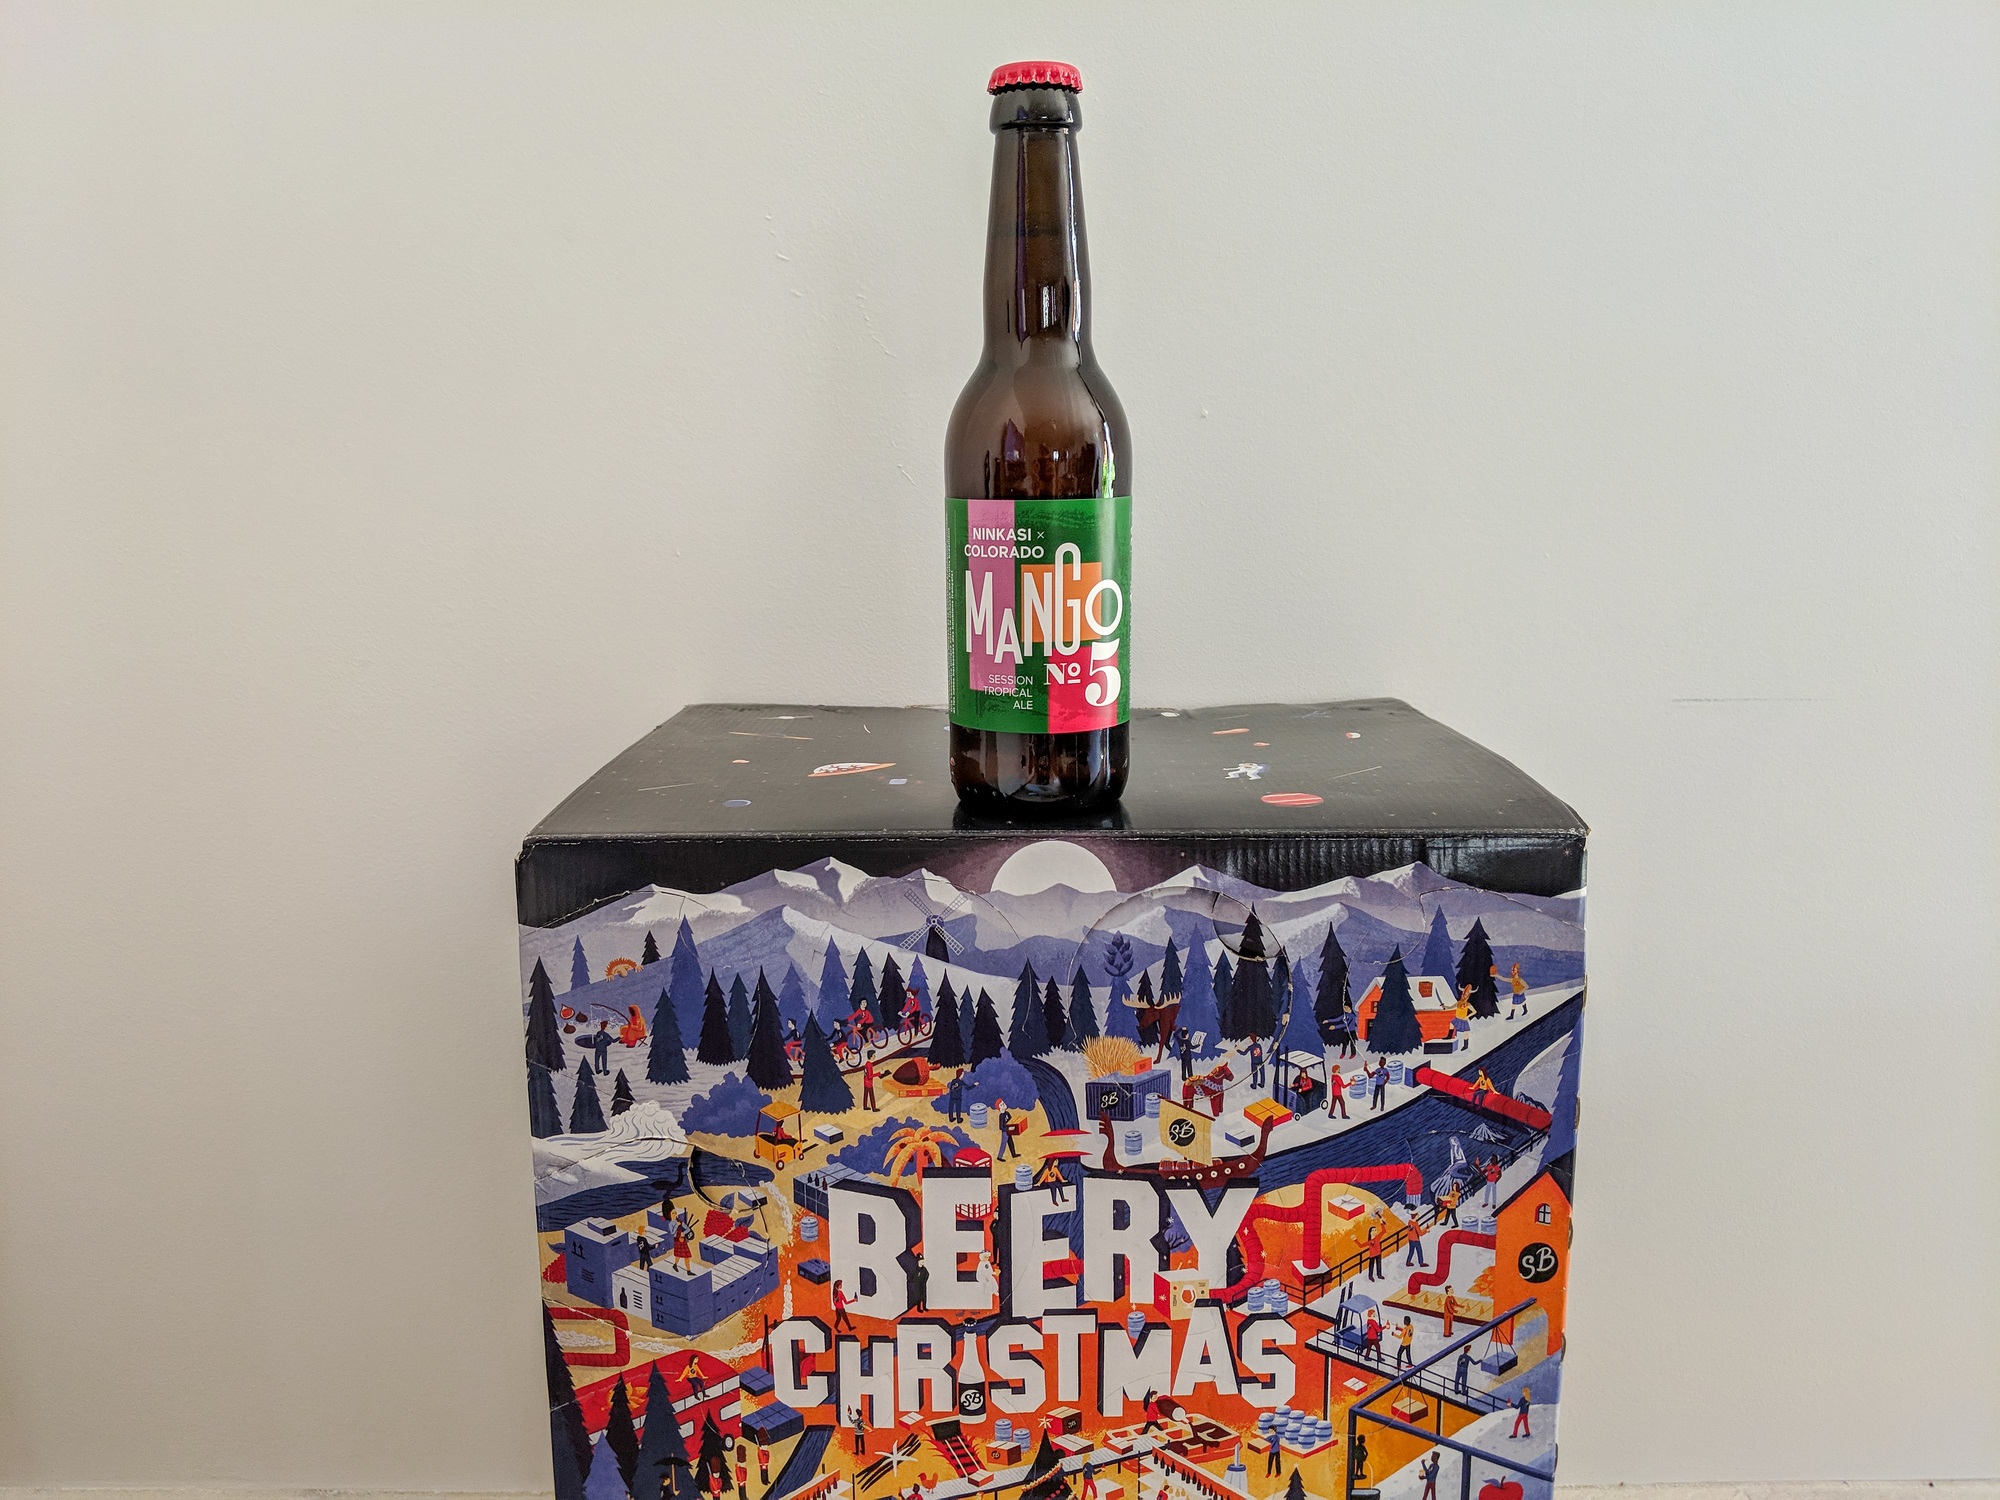 Beery Christmas Beery Christmas 3 Beery Christmas 2019 : Le calendrier de l’avent pour les amateurs de bière Beery Christmas